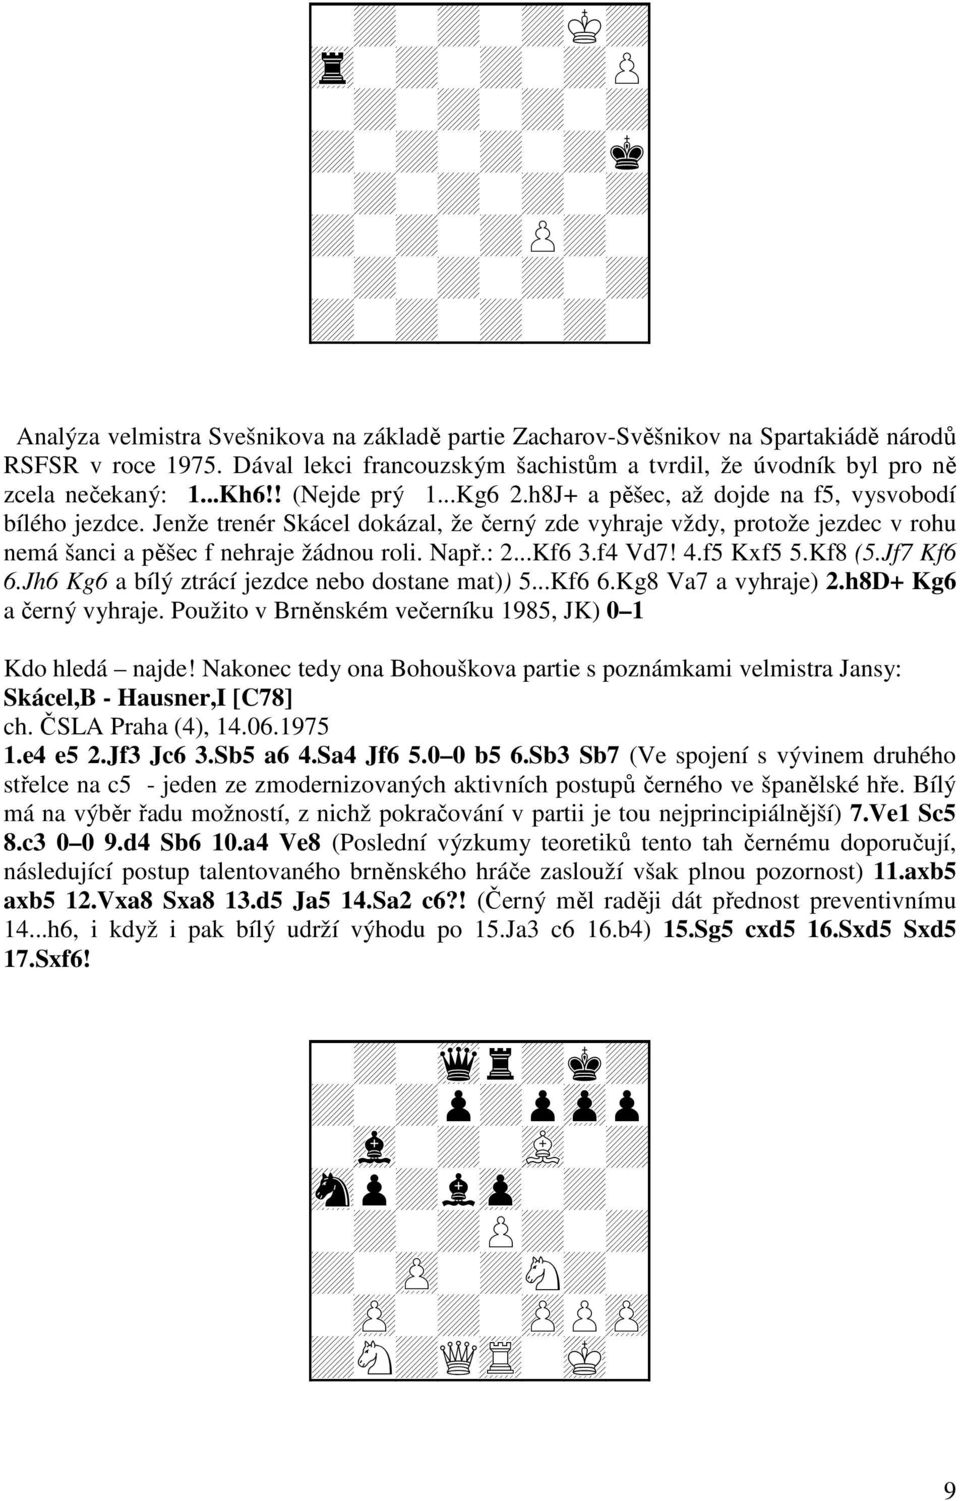 Jenže trenér Skácel dokázal, že černý zde vyhraje vždy, protože jezdec v rohu nemá šanci a pěšec f nehraje žádnou roli. Např.: 2...Kf6 3.f4 Vd7! 4.f5 Kxf5 5.Kf8 (5.Jf7 Kf6 6.